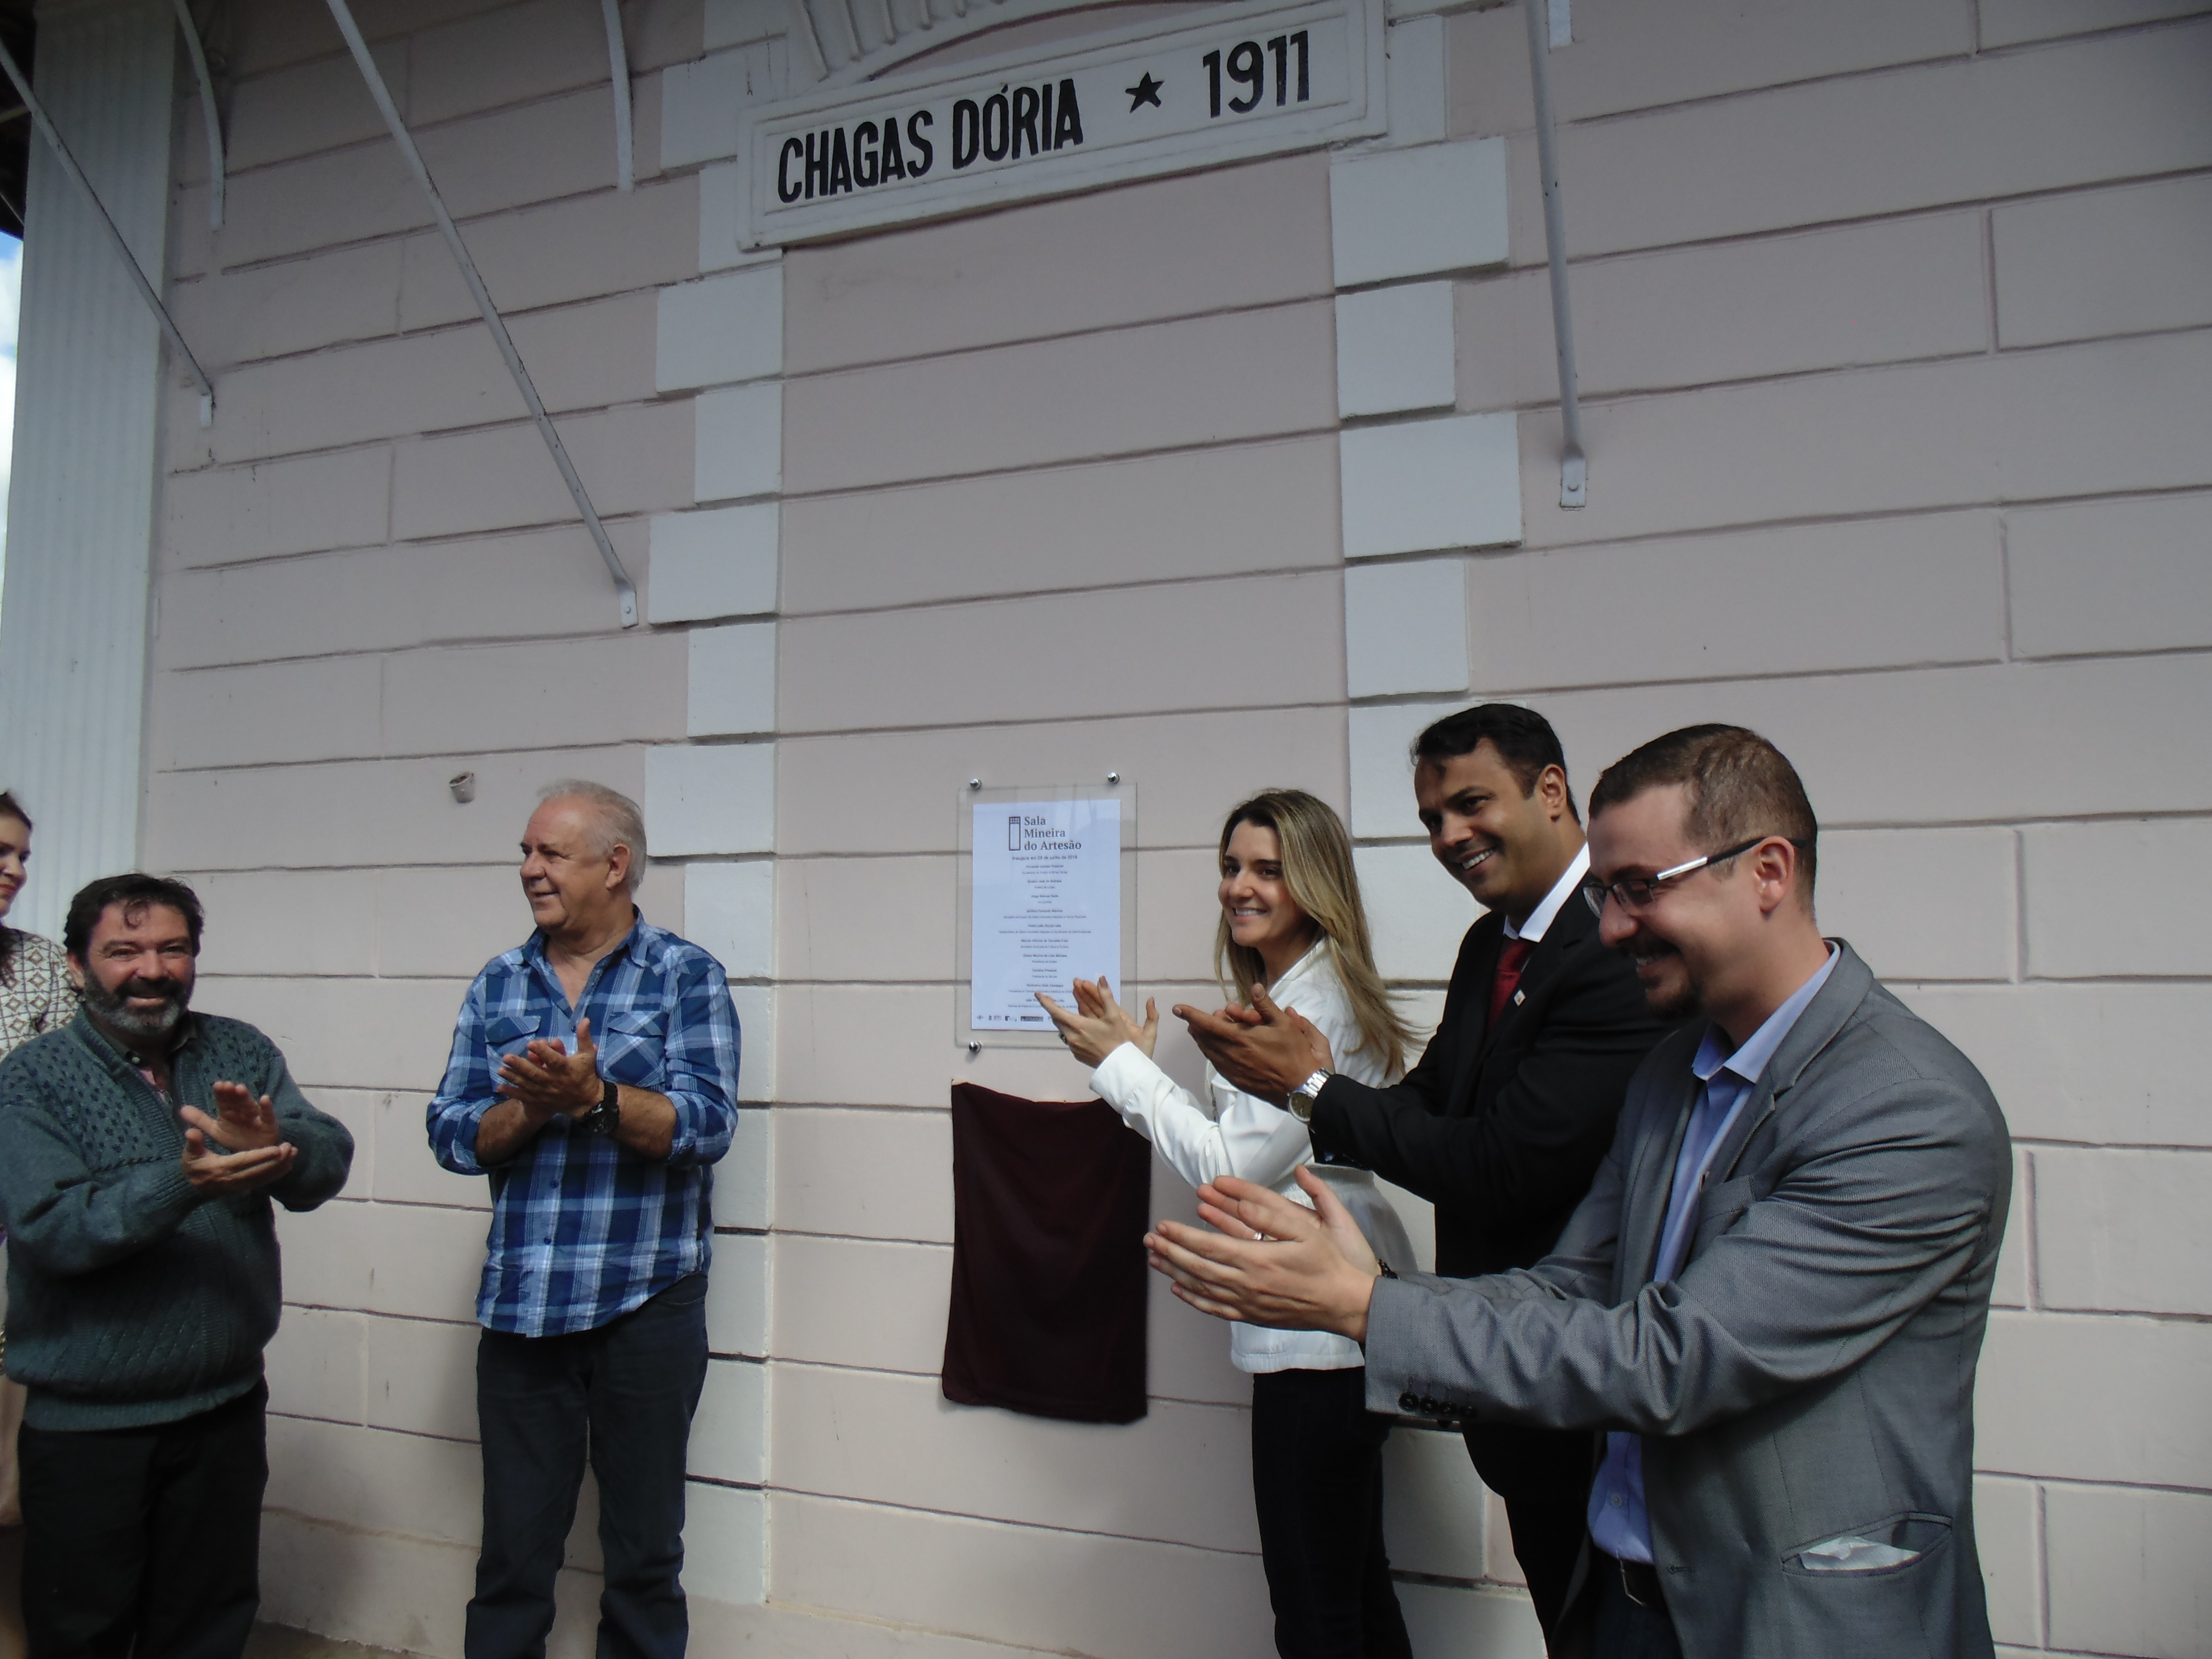 Sala do Artesão é inaugurada na Estação Chagas Dória